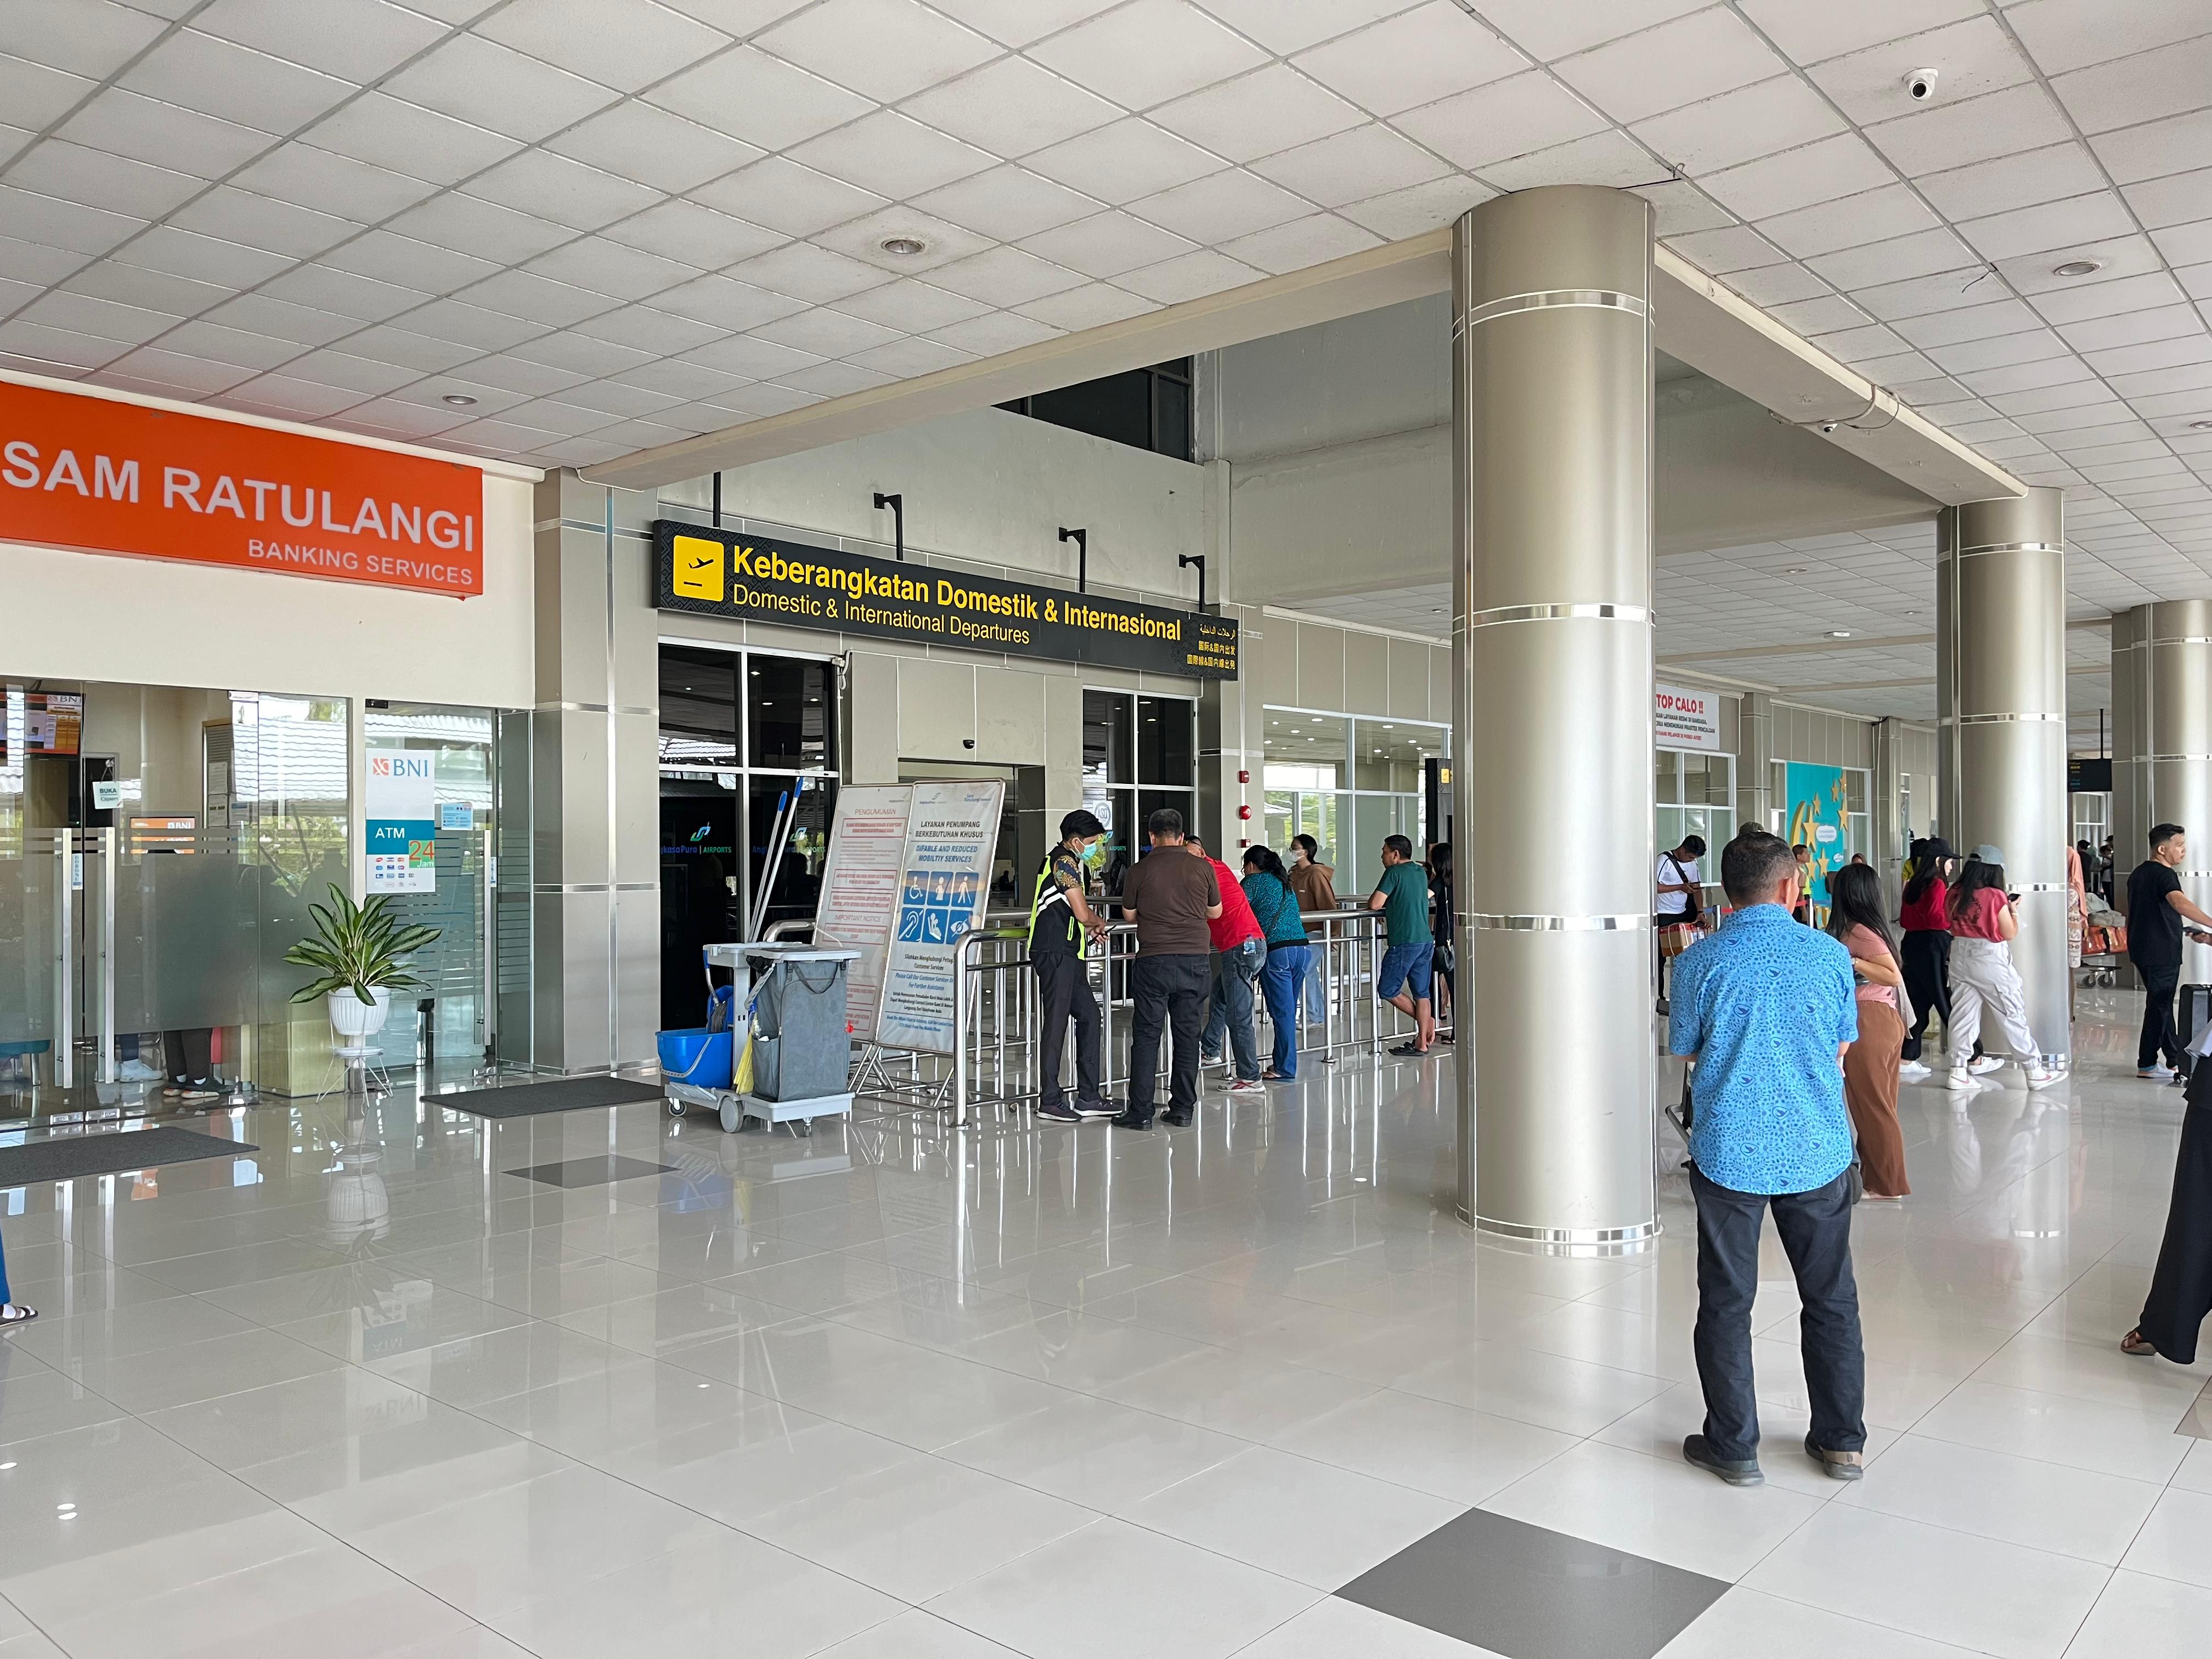 Gambar Berita Terbaru Operasional Bandara Sam Ratulangi Kembali Normal